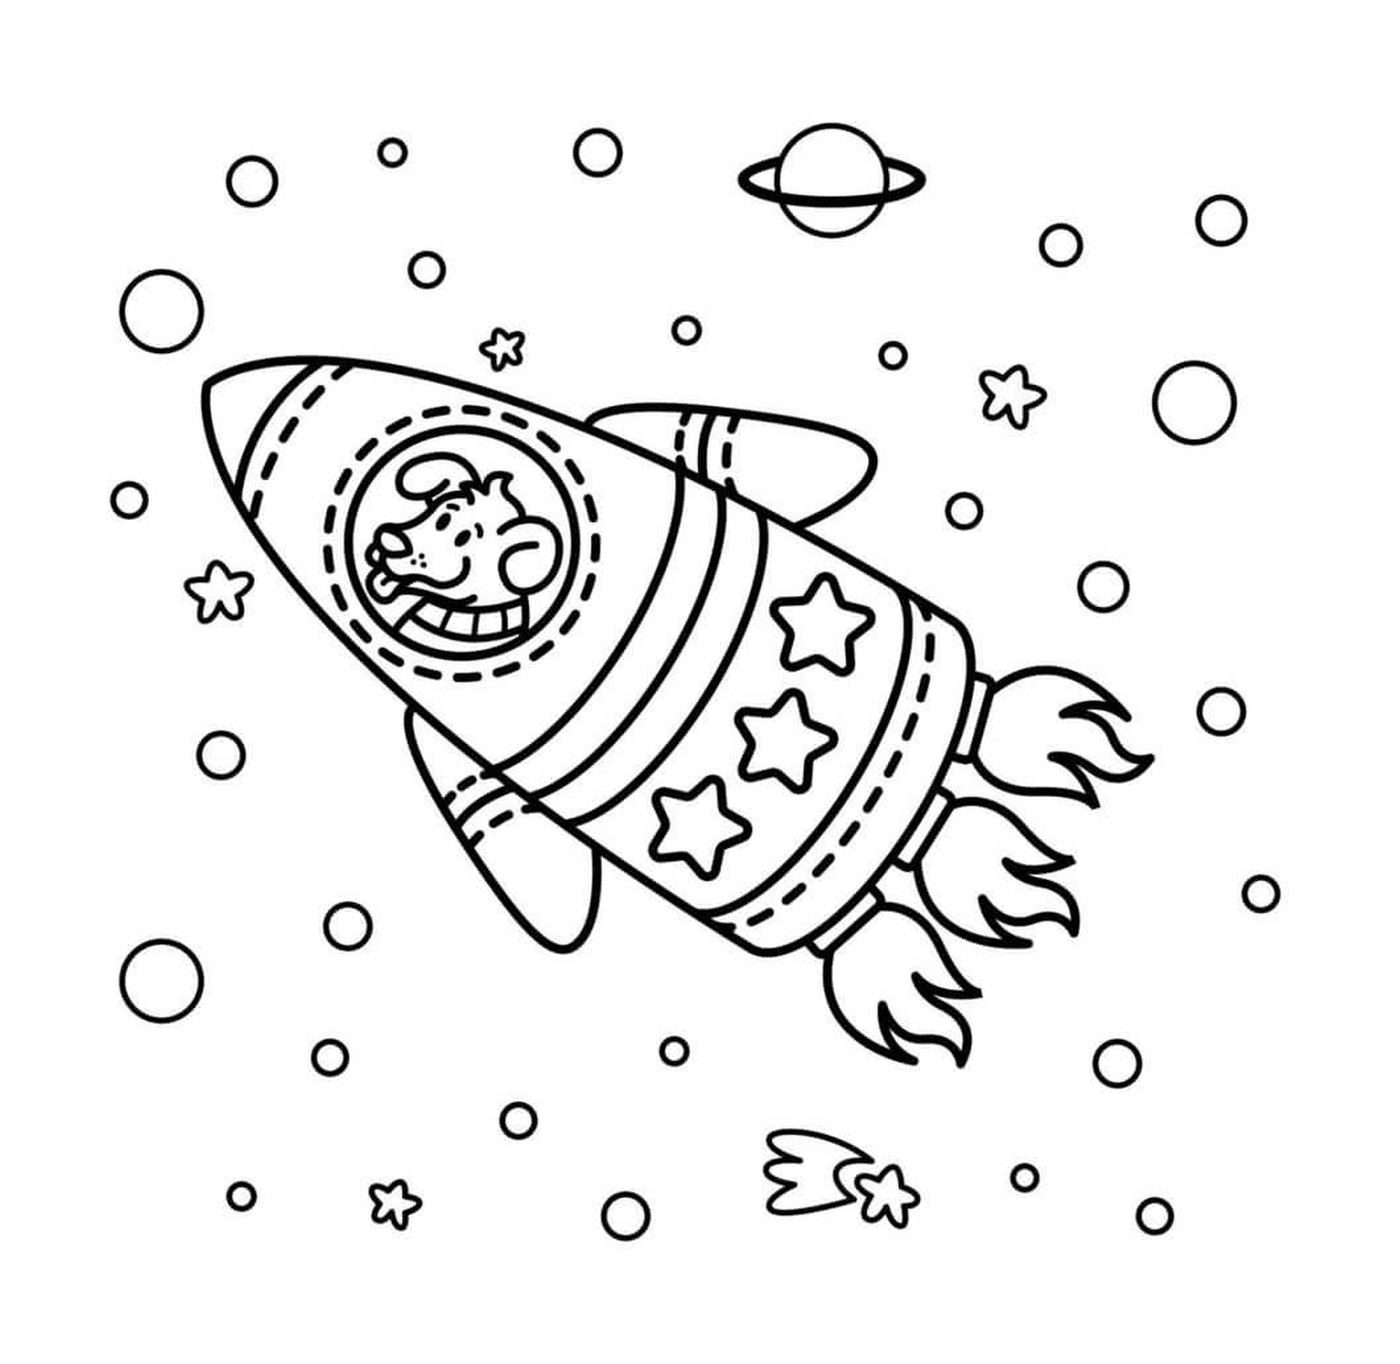  Cohete espacial con perro 